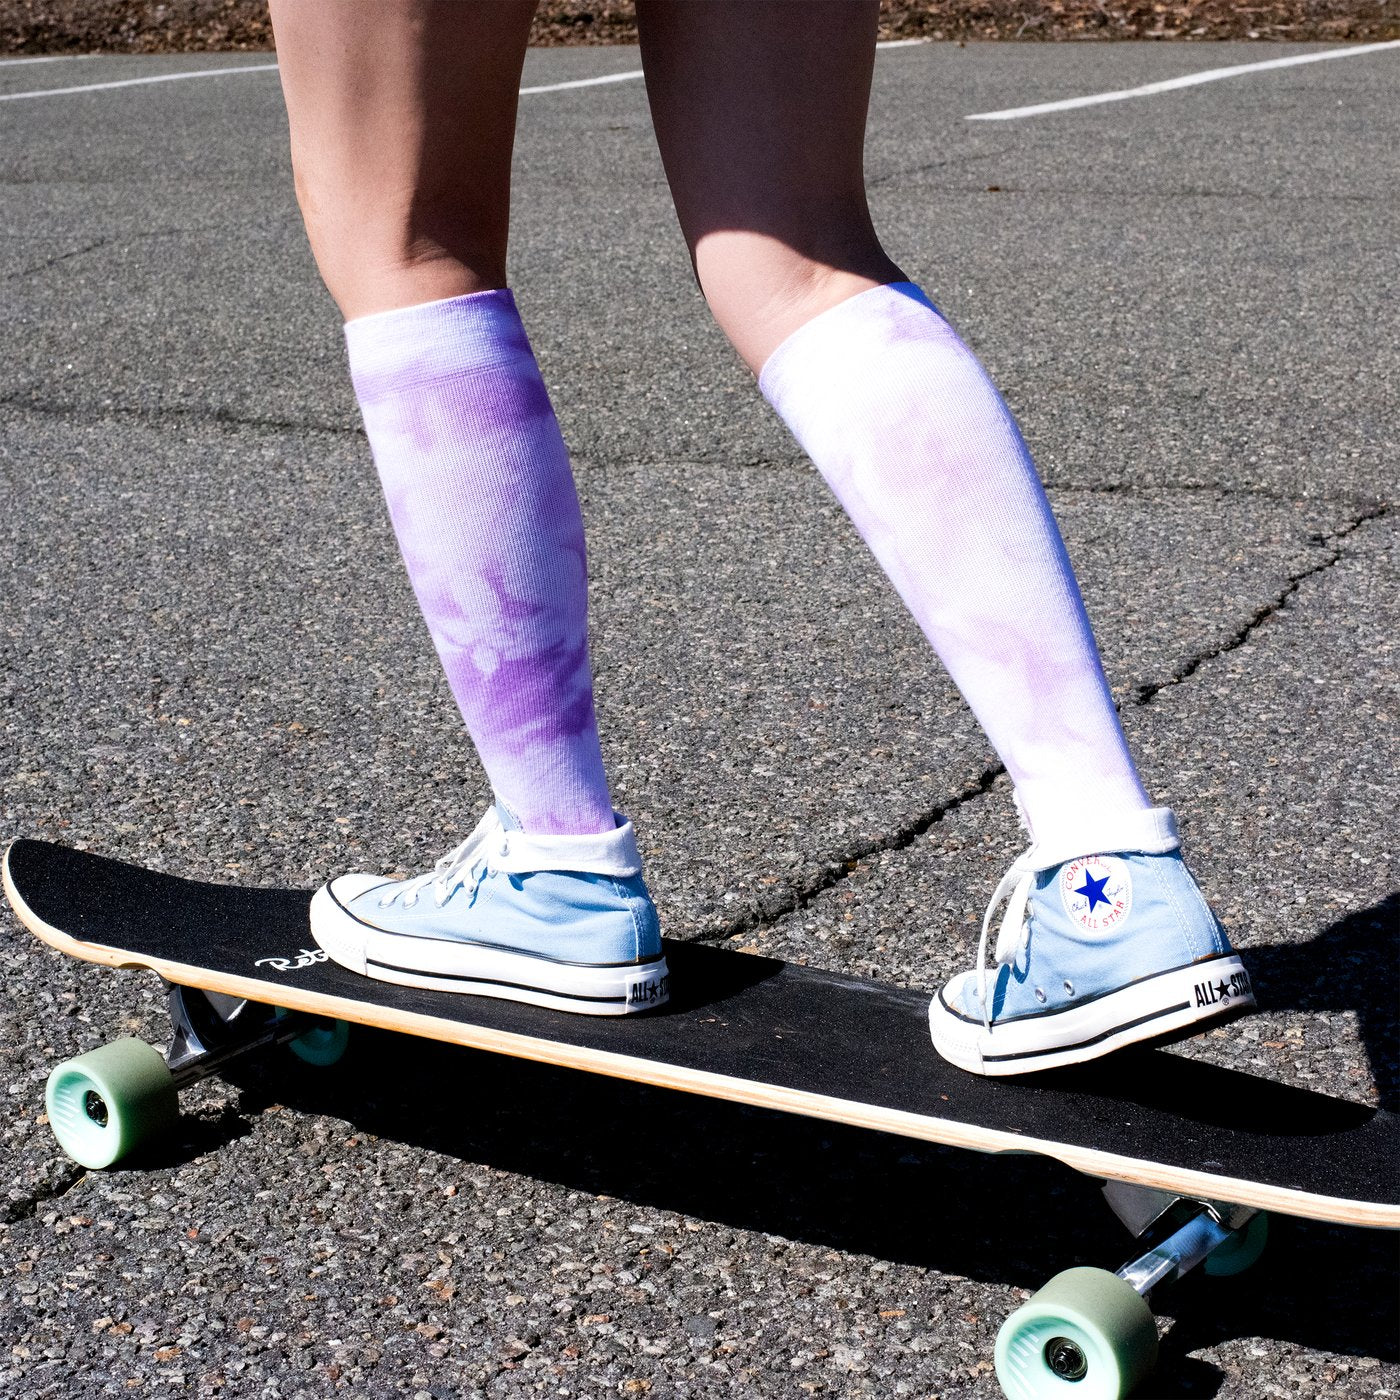 Should High School Athletes Wear Compression Socks?